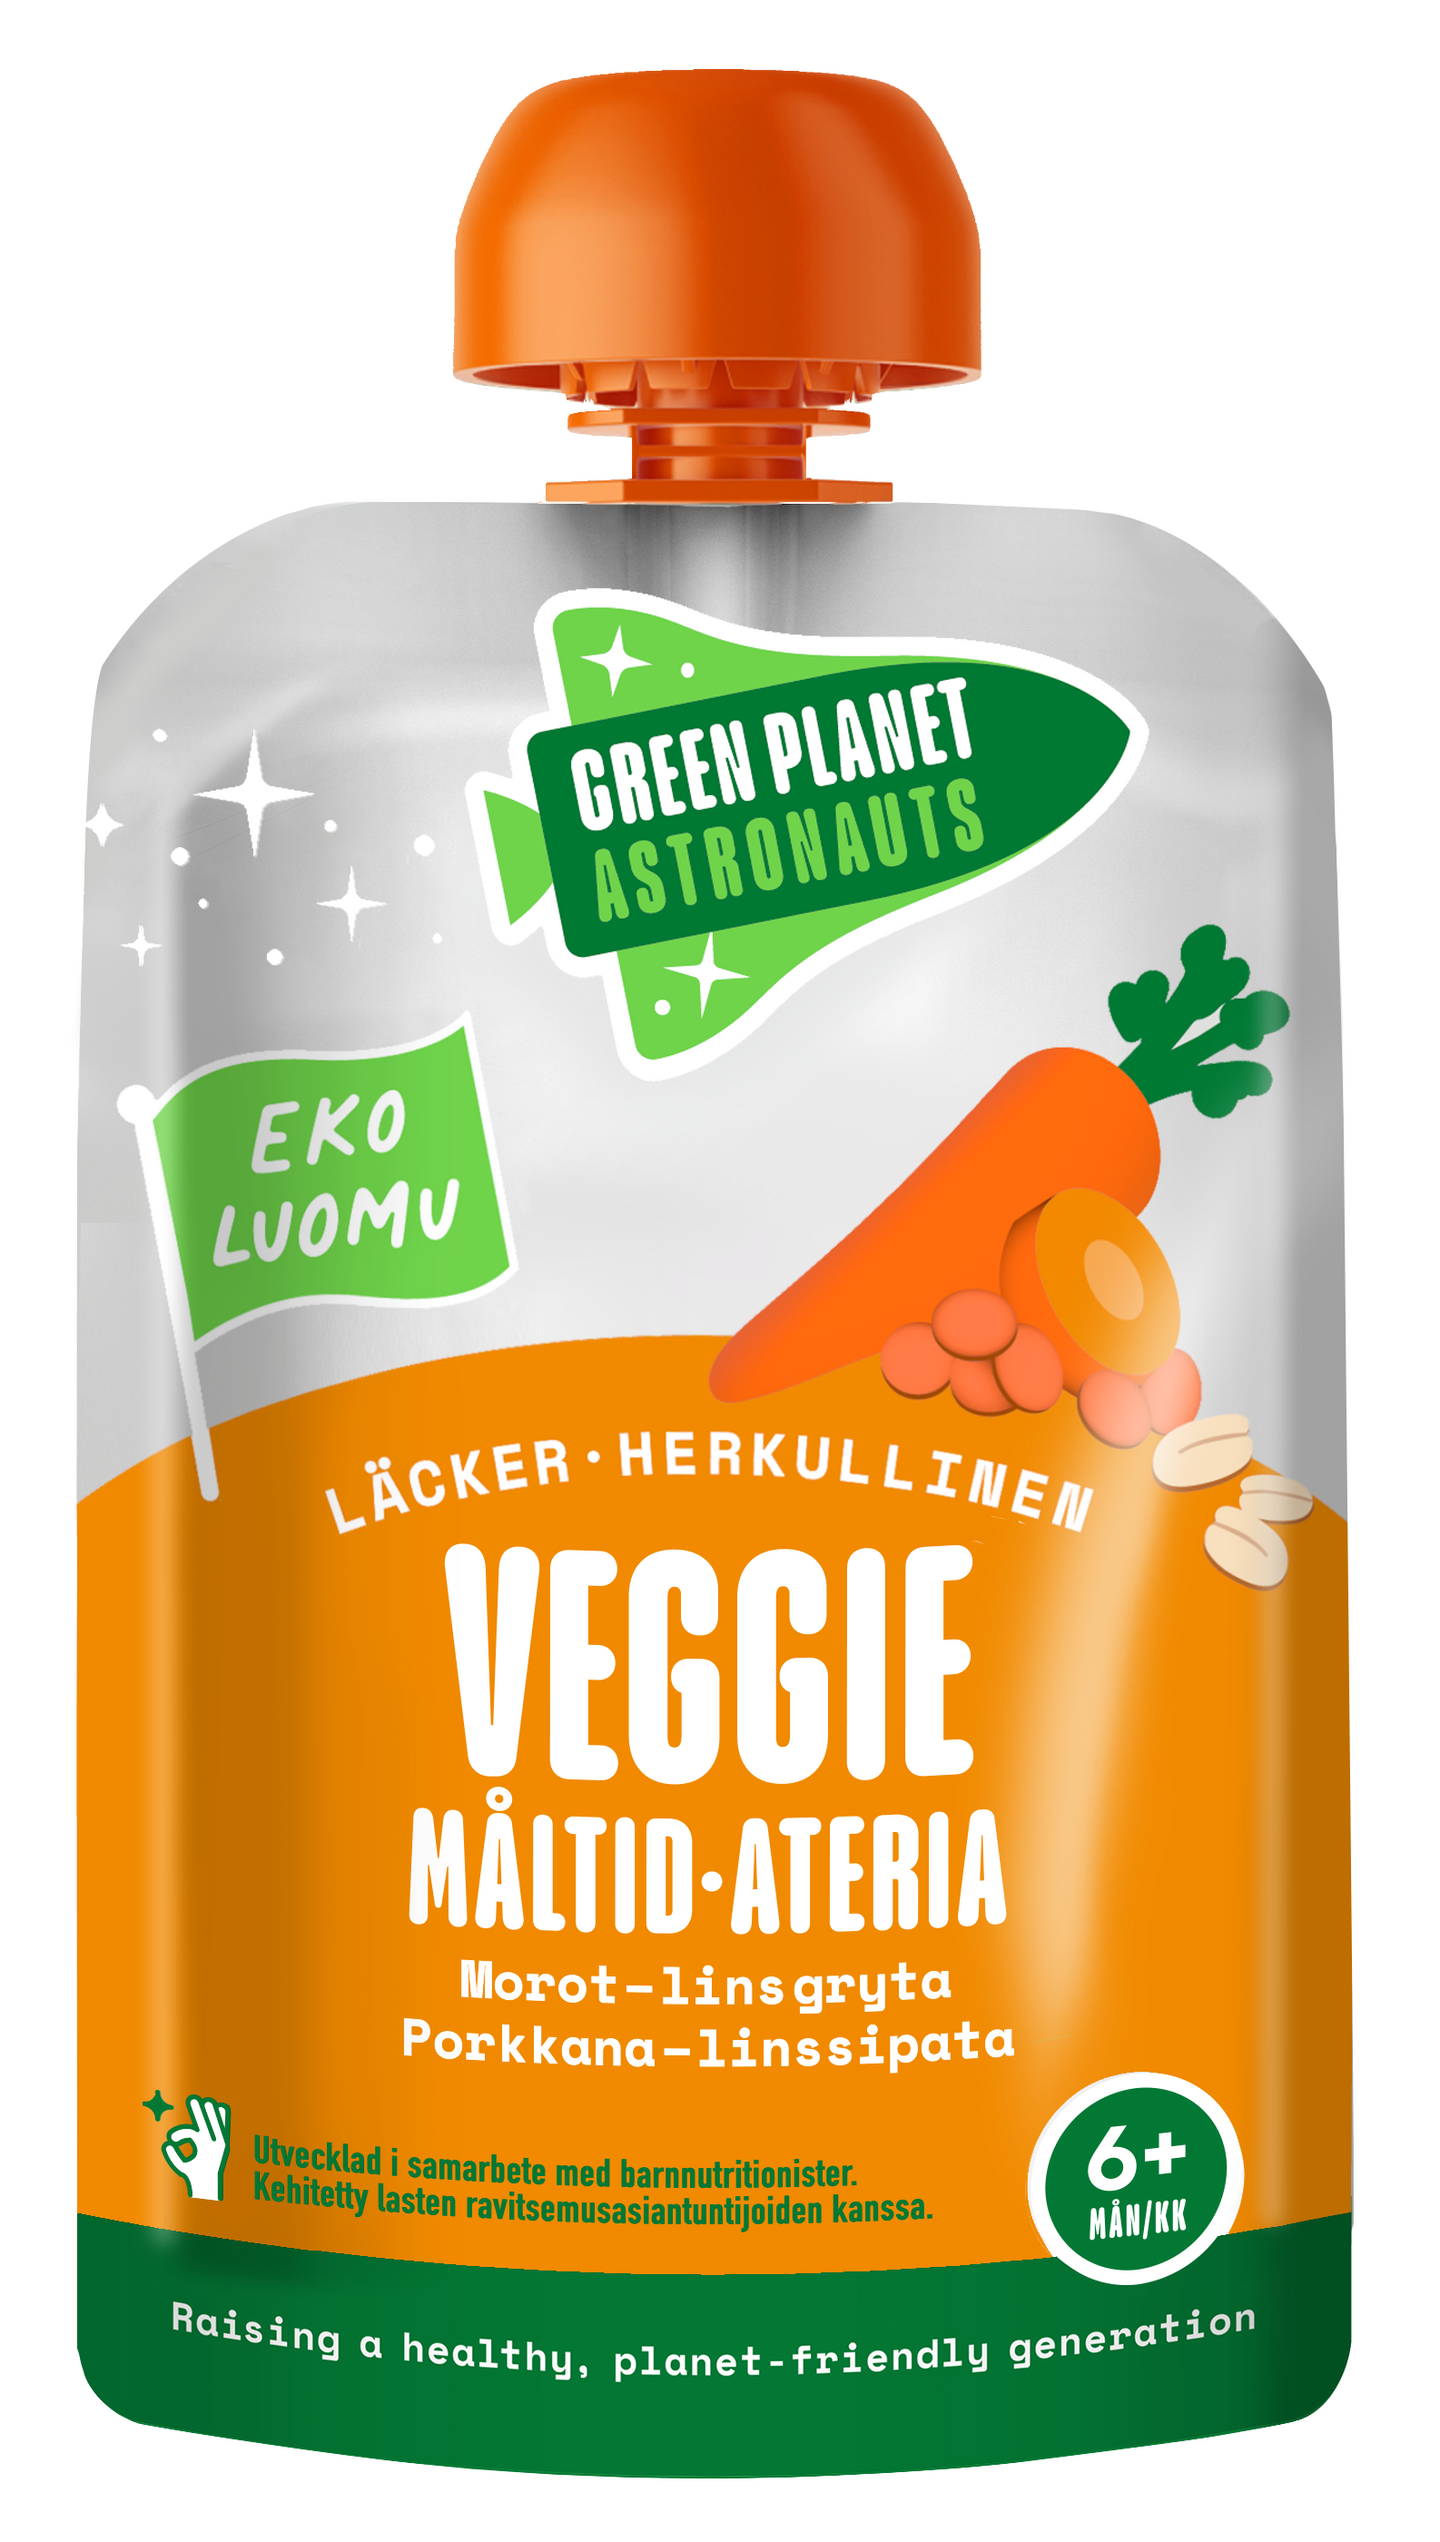 Green Planet Astronauts Luomu kaurakasvisateria linssi-porkkana 100g 6kk+